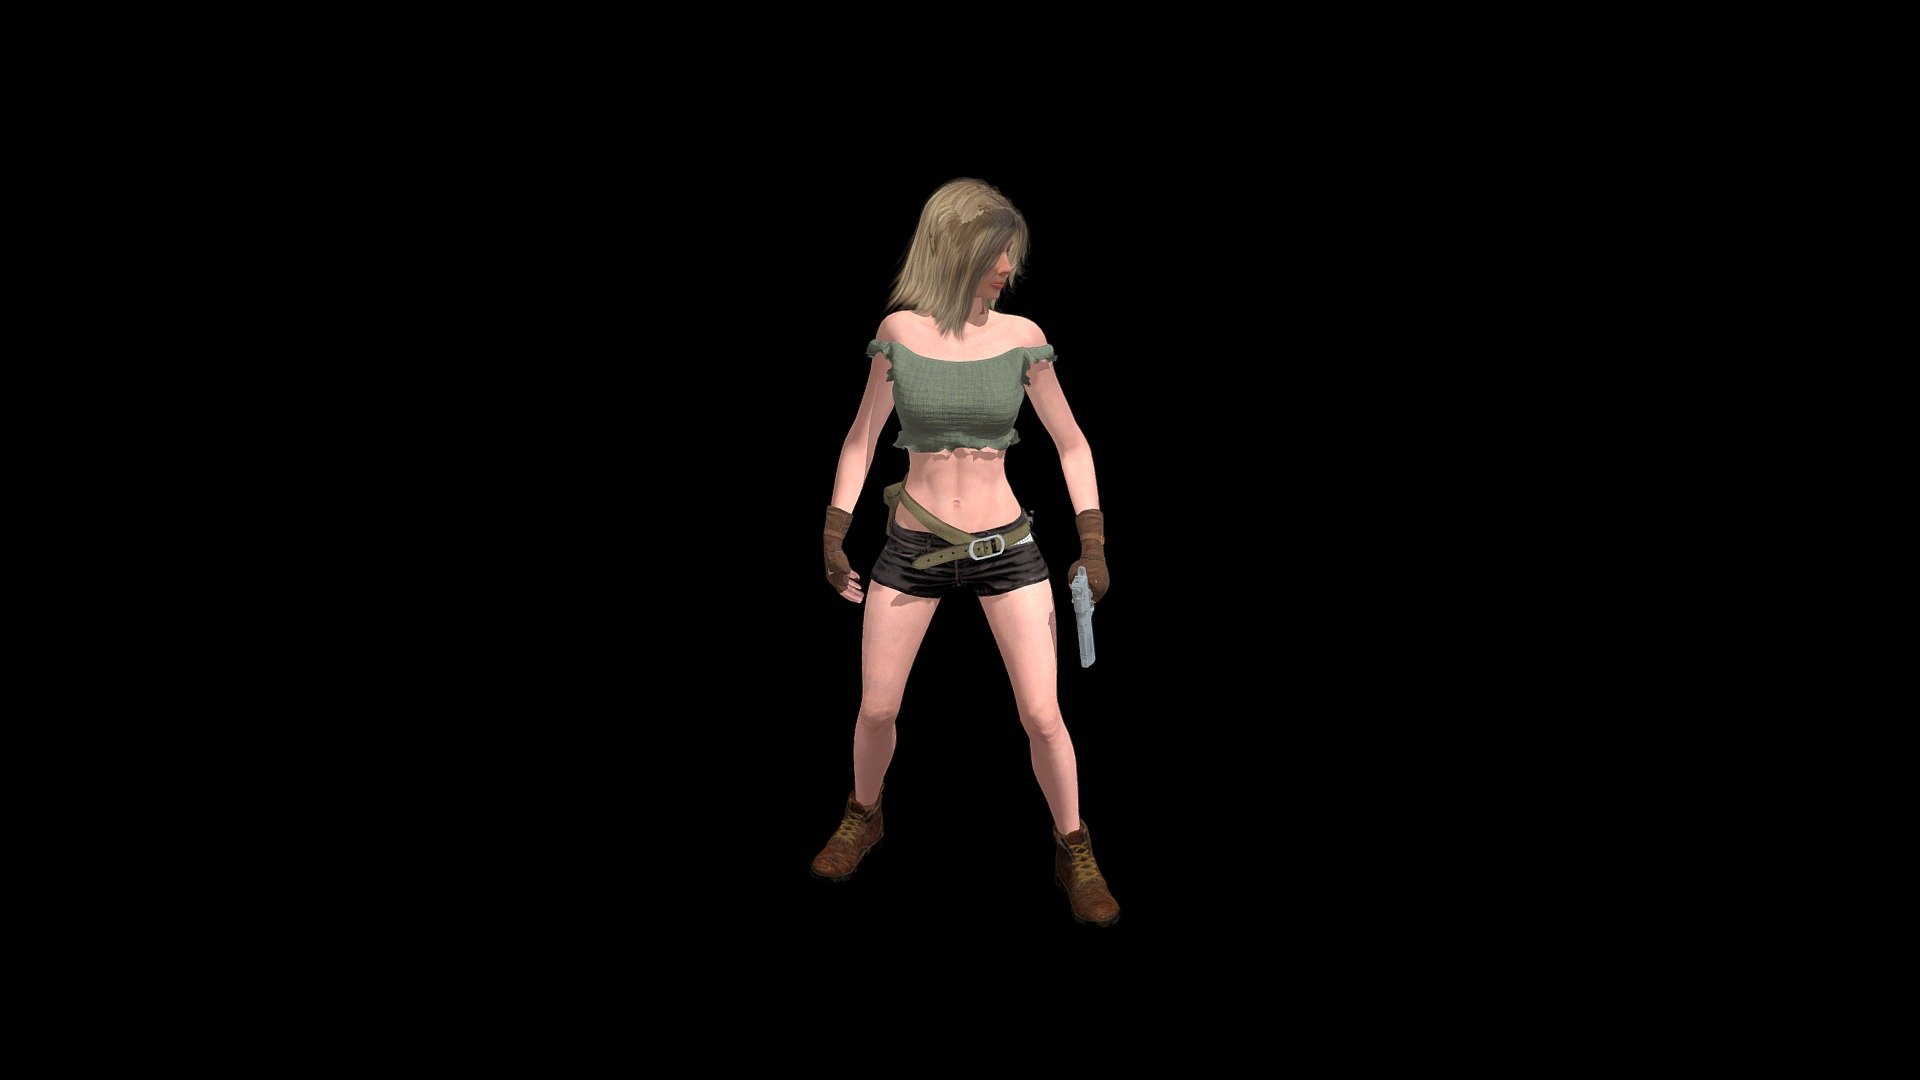 Game model, adventure girl shooting gun. For my game development 3d model